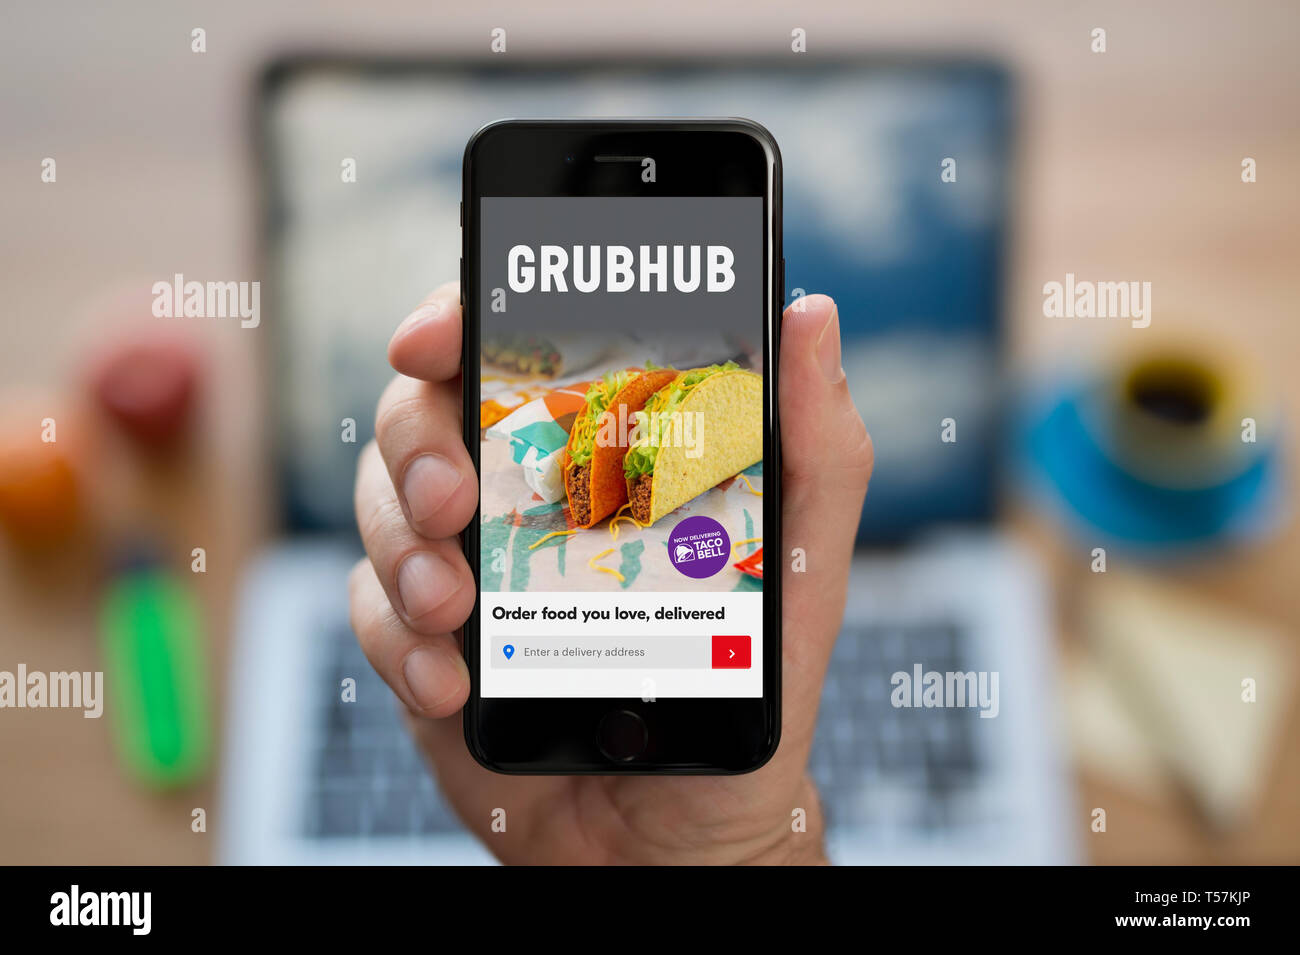 Un uomo guarda al suo iPhone che visualizza il logo Grubhub (solo uso editoriale). Foto Stock